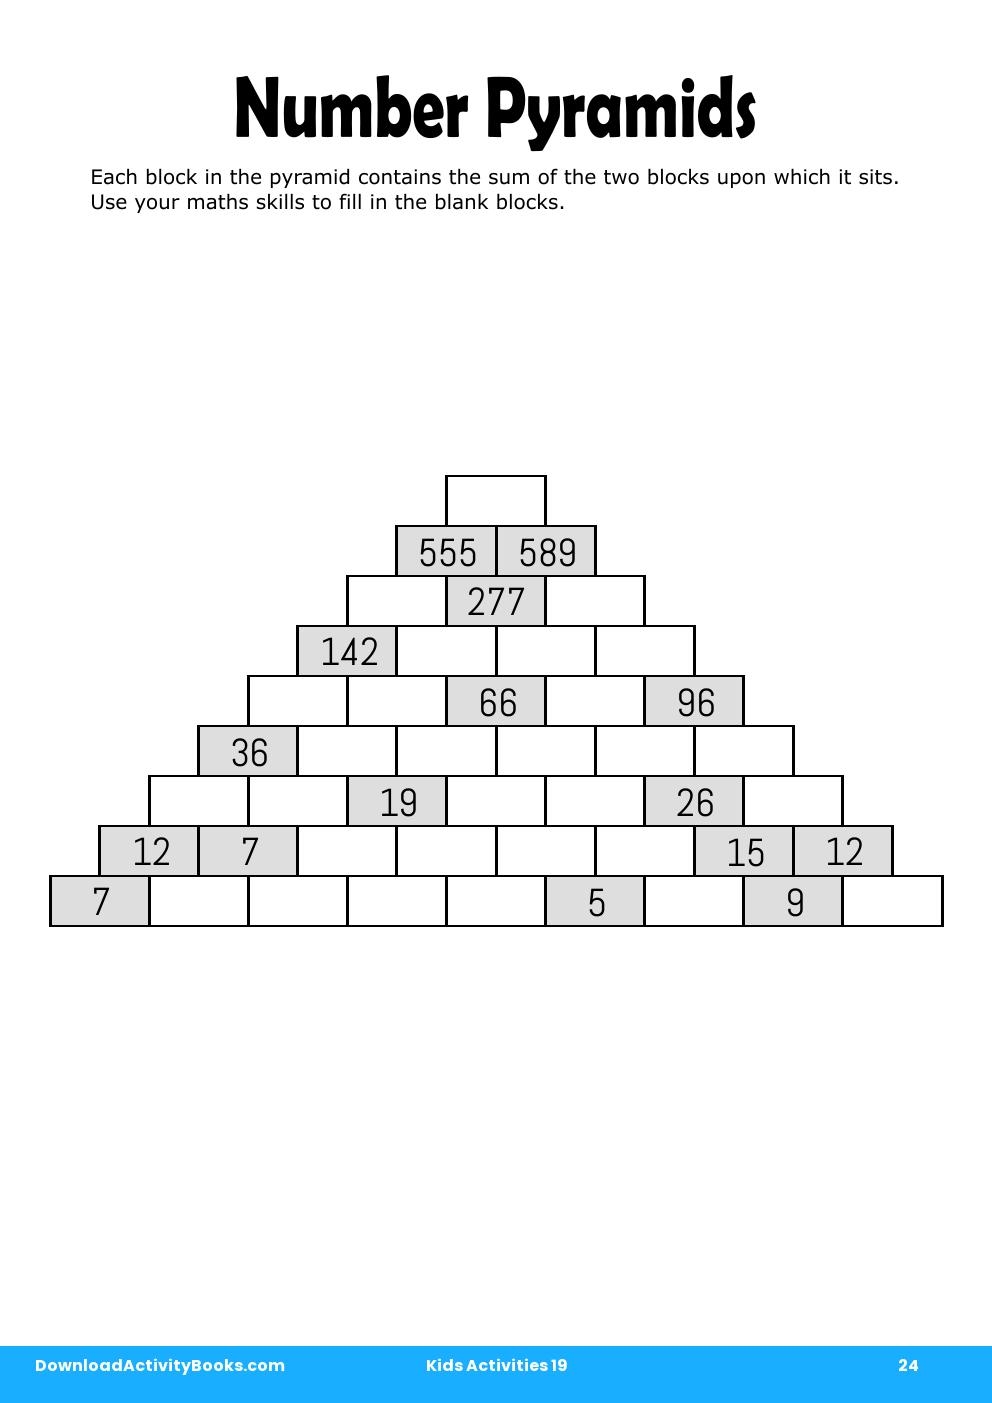 Number Pyramids in Kids Activities 19